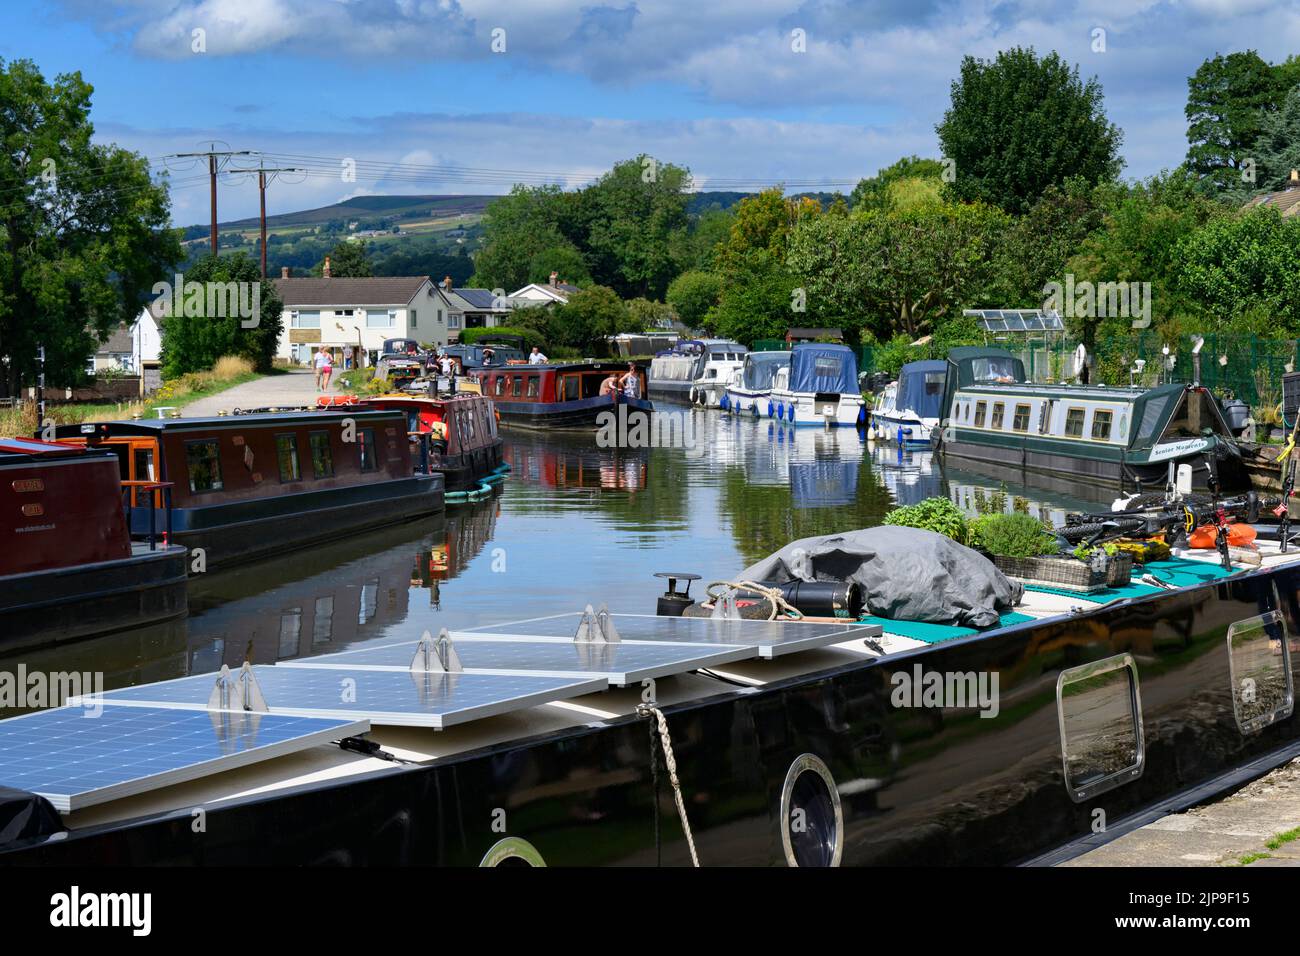 Barges an geschäftigen Anlegestellen, Selbstfahrts-Bootsverleih, malerische sonnige Strecke des Leeds Liverpool Canal & Towpath - Bingley, West Yorkshire England Großbritannien. Stockfoto